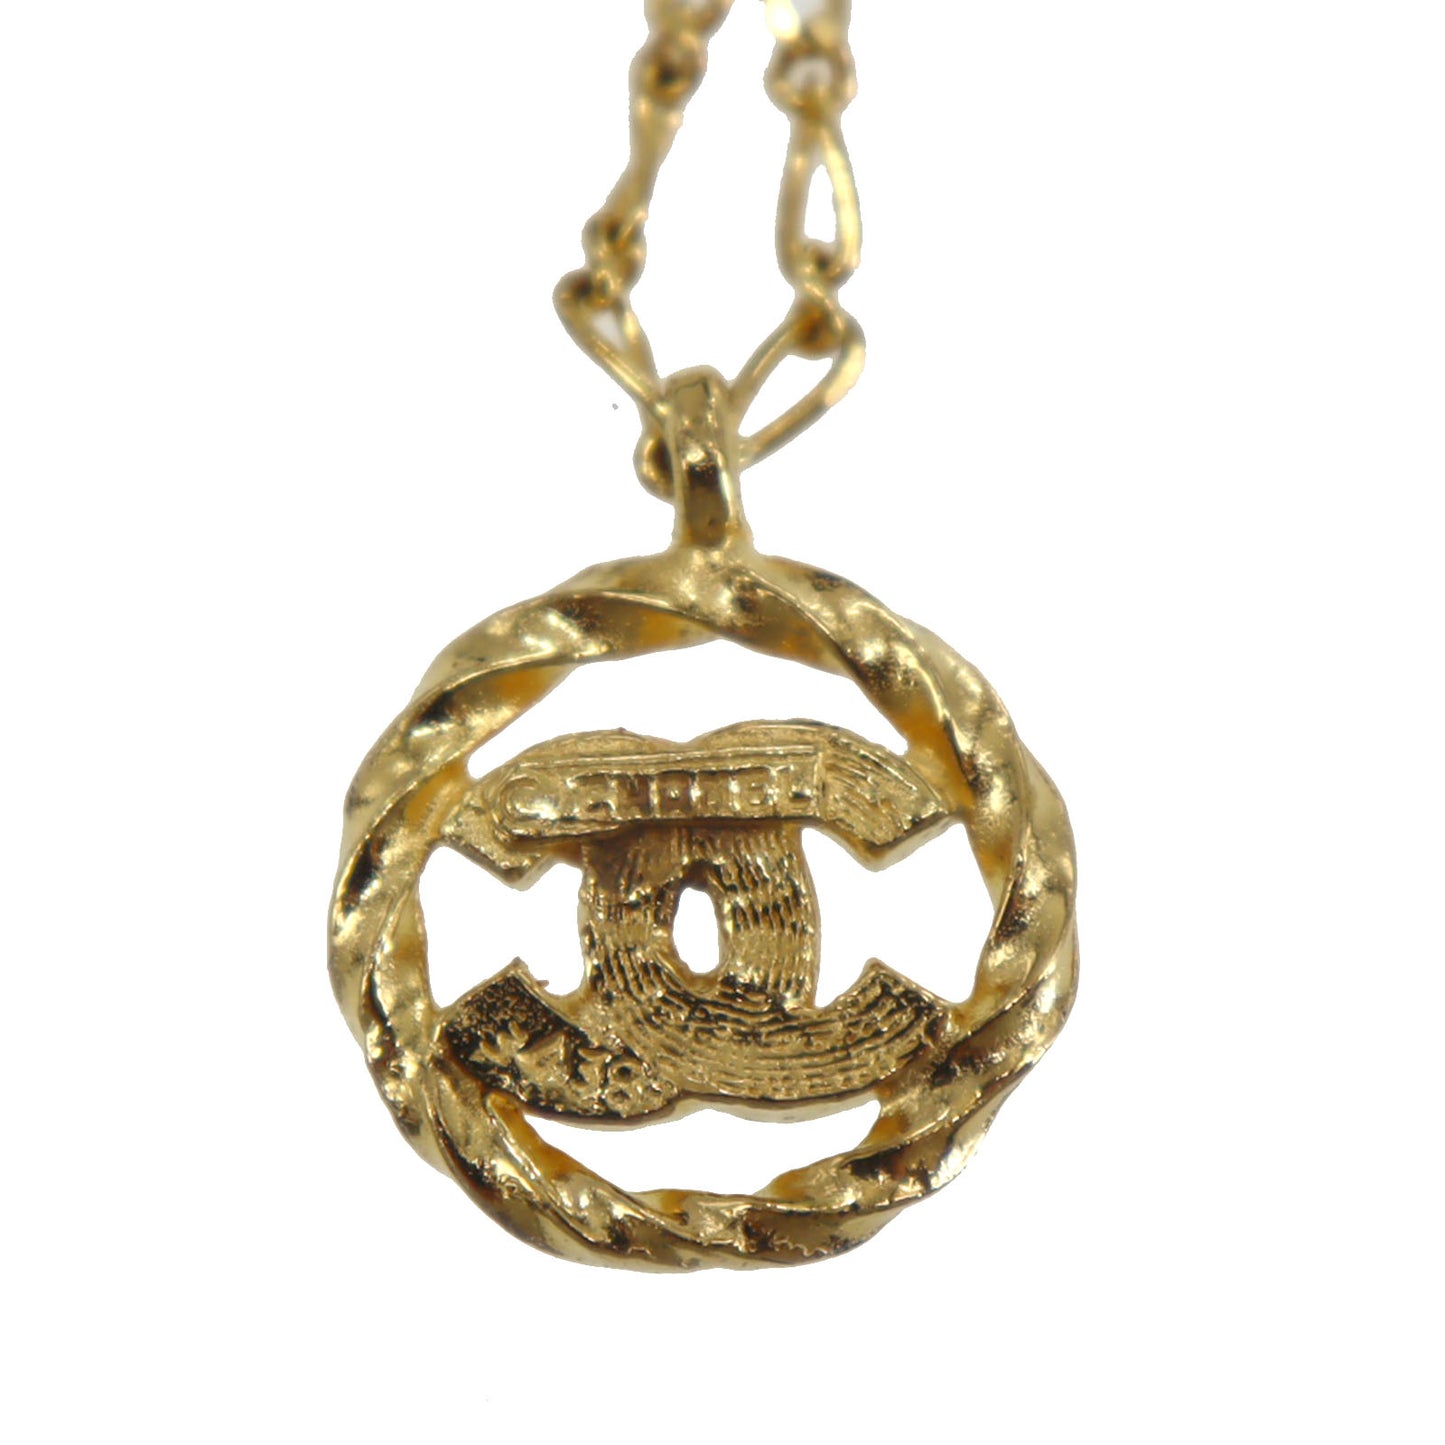 CHANEL CC Logos Circle Necklace Stone Gold 3438 #CG831